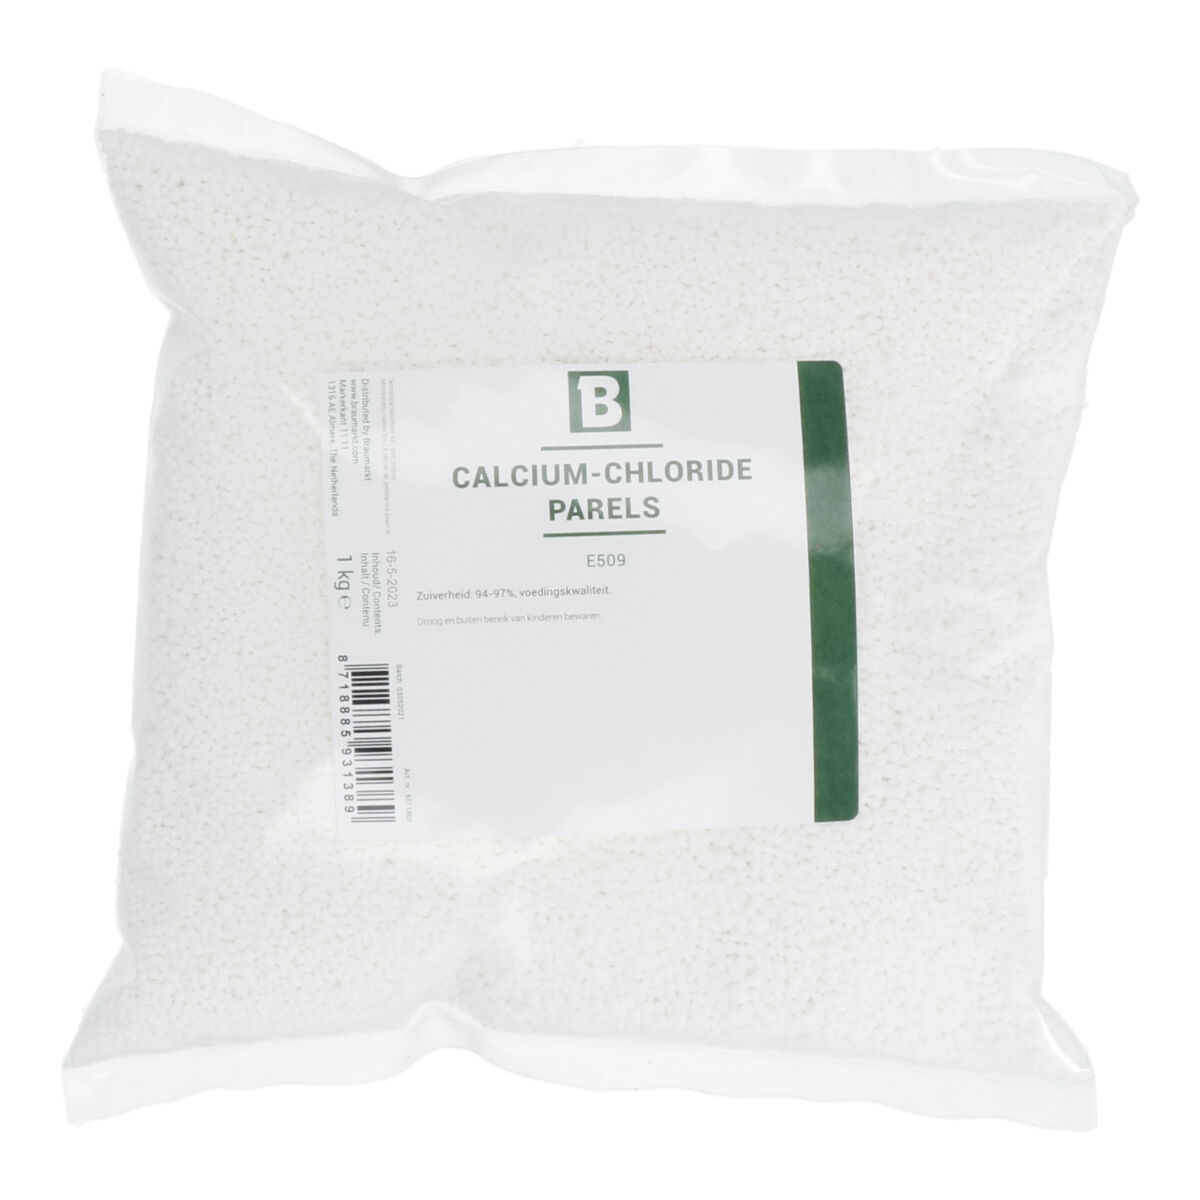 Calcium Chloride (E509) - Pearls 1 kg